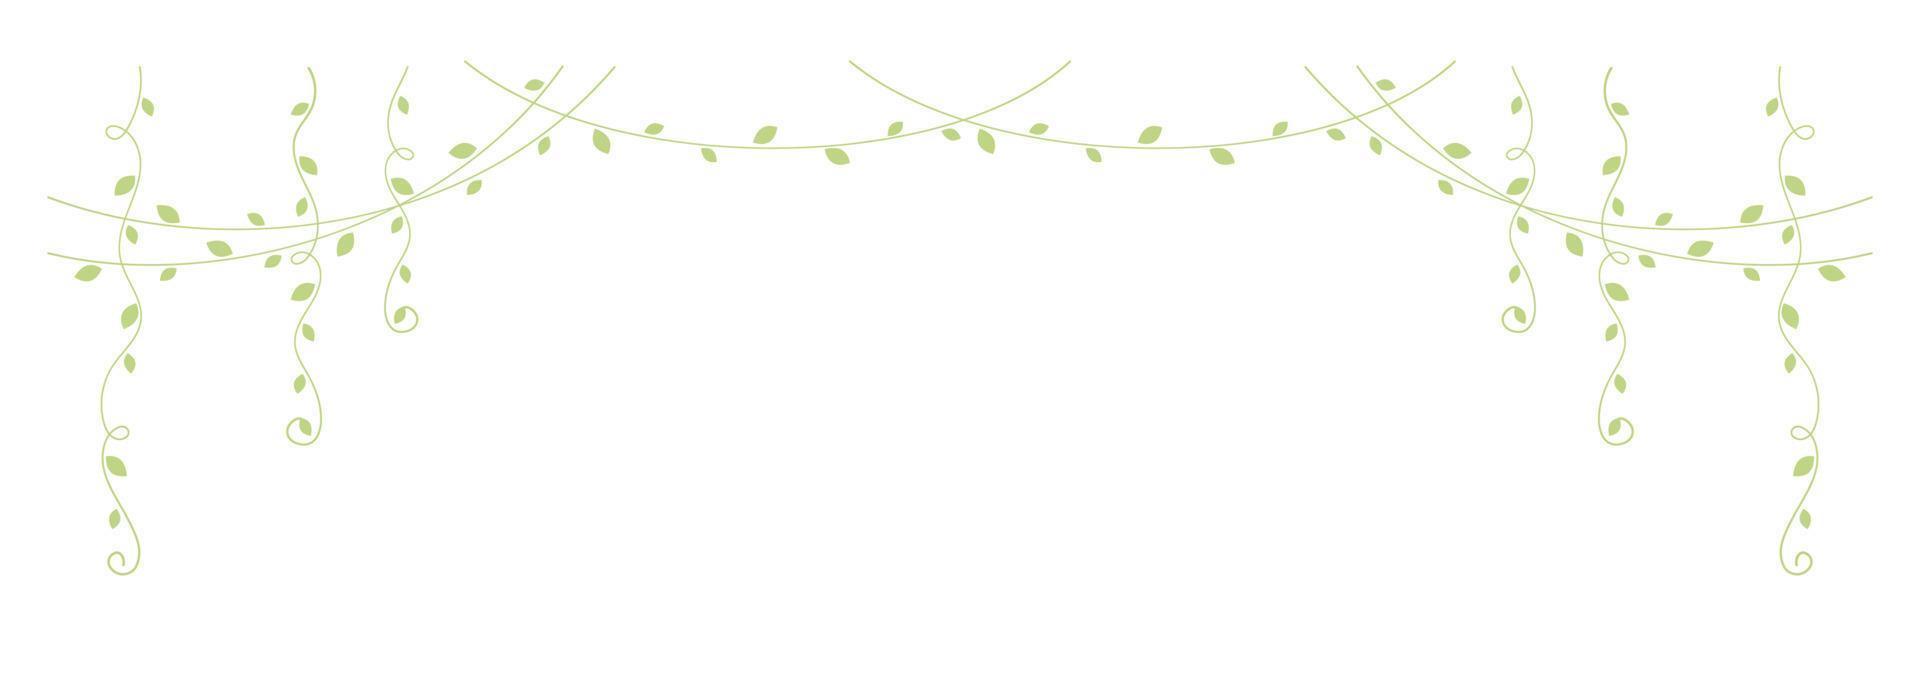 Green hanging vines vector illustration. Simple minimal floral botanical vine curtain design elements for spring.